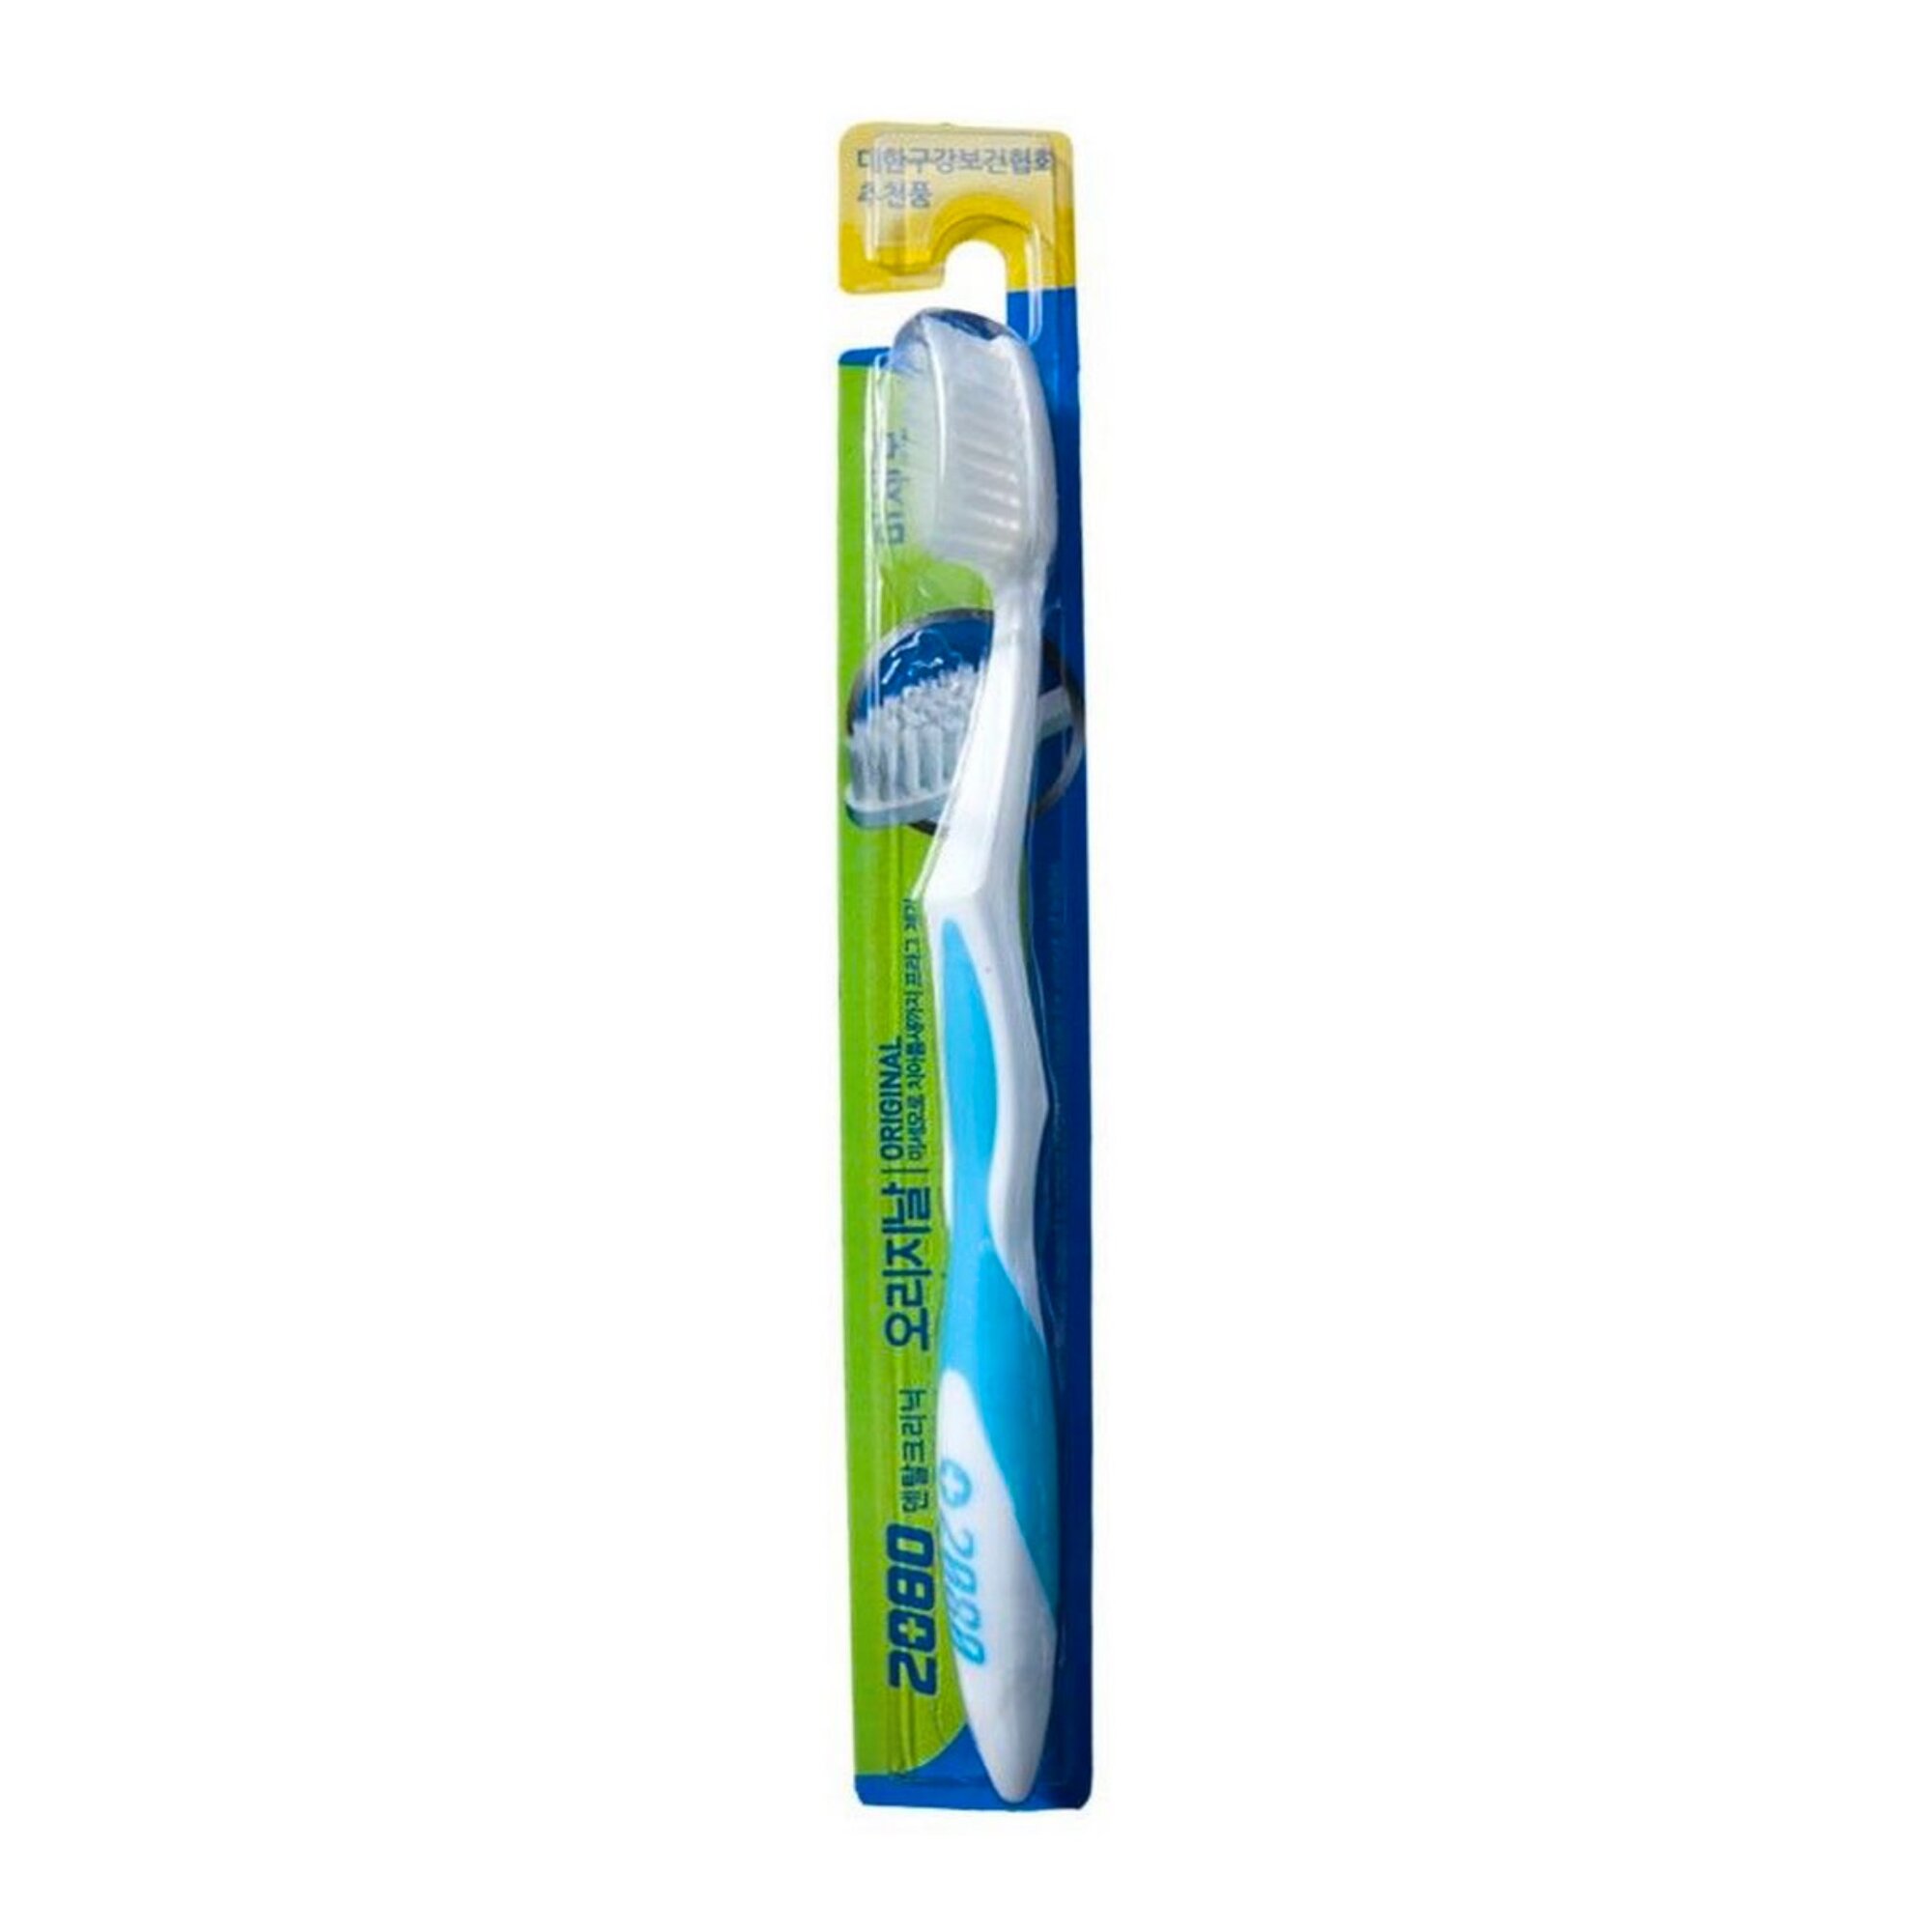 Зубная щетка средней жесткости KERASYS Dental Clinic 2080 Original Soft Toothbrush, голубой